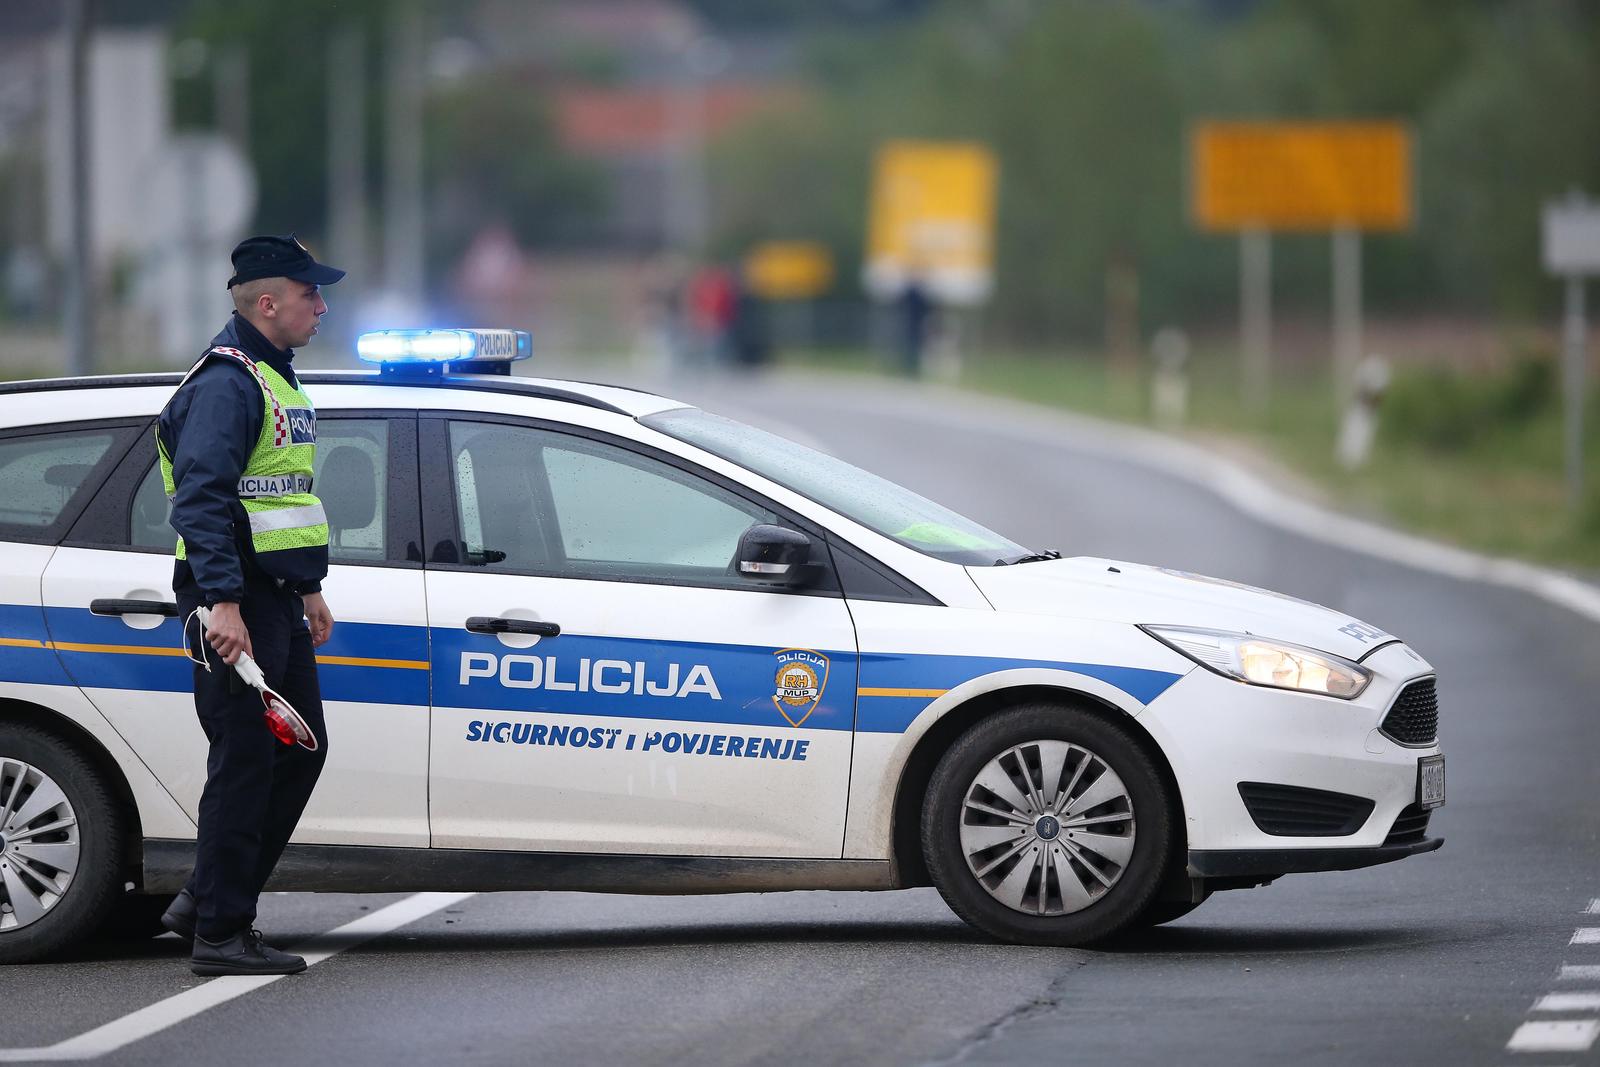 07.05.2022., Velika Gorica - Prometna nesreca kod mjesta Ogulinec, tri osobe poginule u slijetanju automobila s ceste. Ocevid je u tijeku. Photo: Matija Habljak/PIXSELL